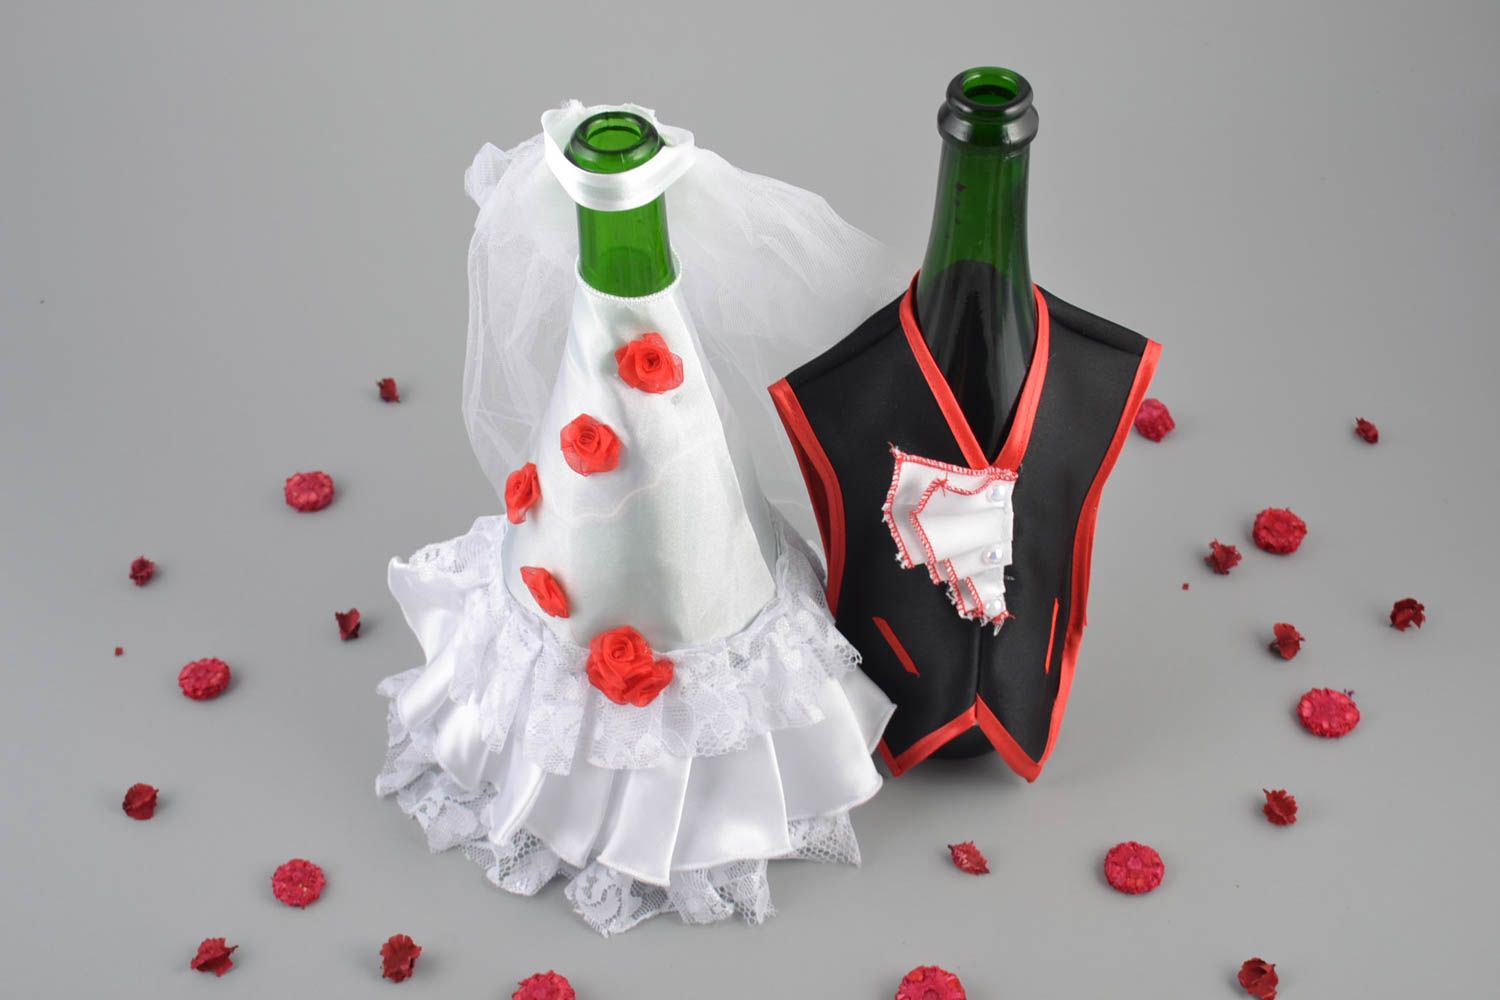 Одежда жених и невеста на бутылки шампанского ручной работы из атласа и фатина фото 1